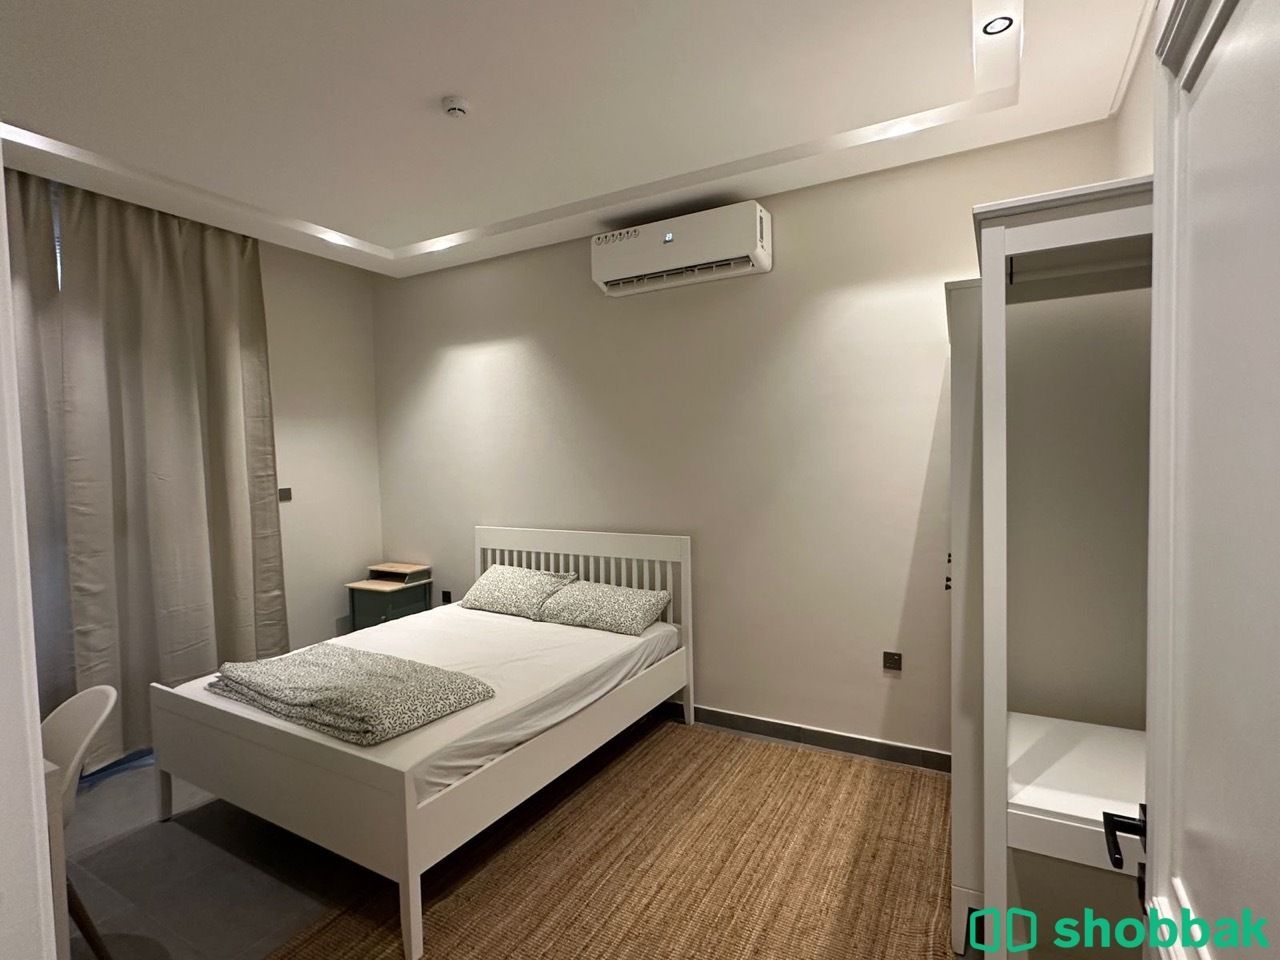 غرفة نوم طفل للبيع  Shobbak Saudi Arabia